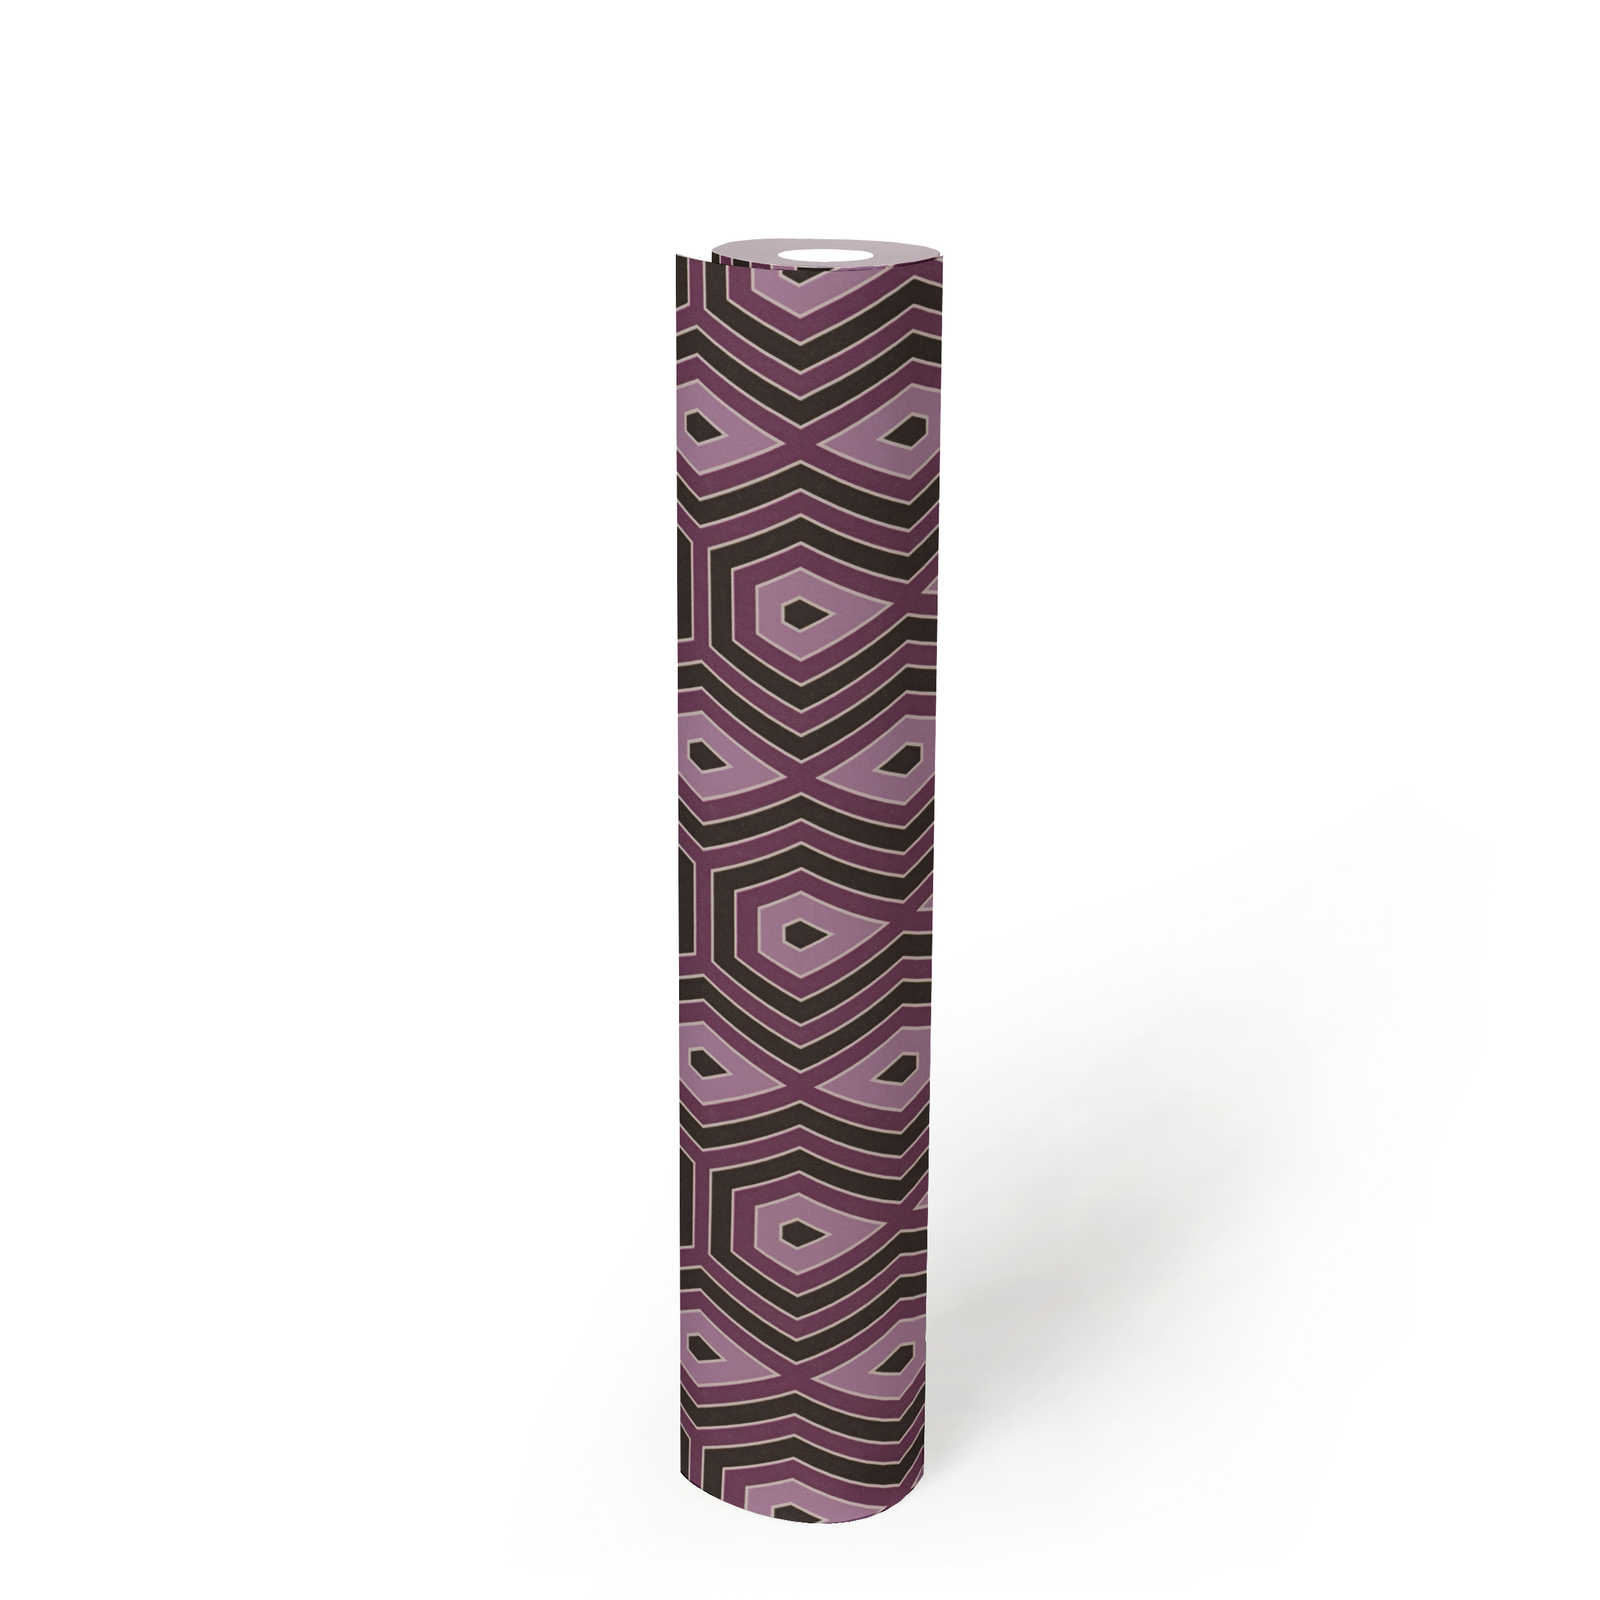             Papier peint à motifs Violet & vieux rose avec graphique Design rétro - Violet, noir
        